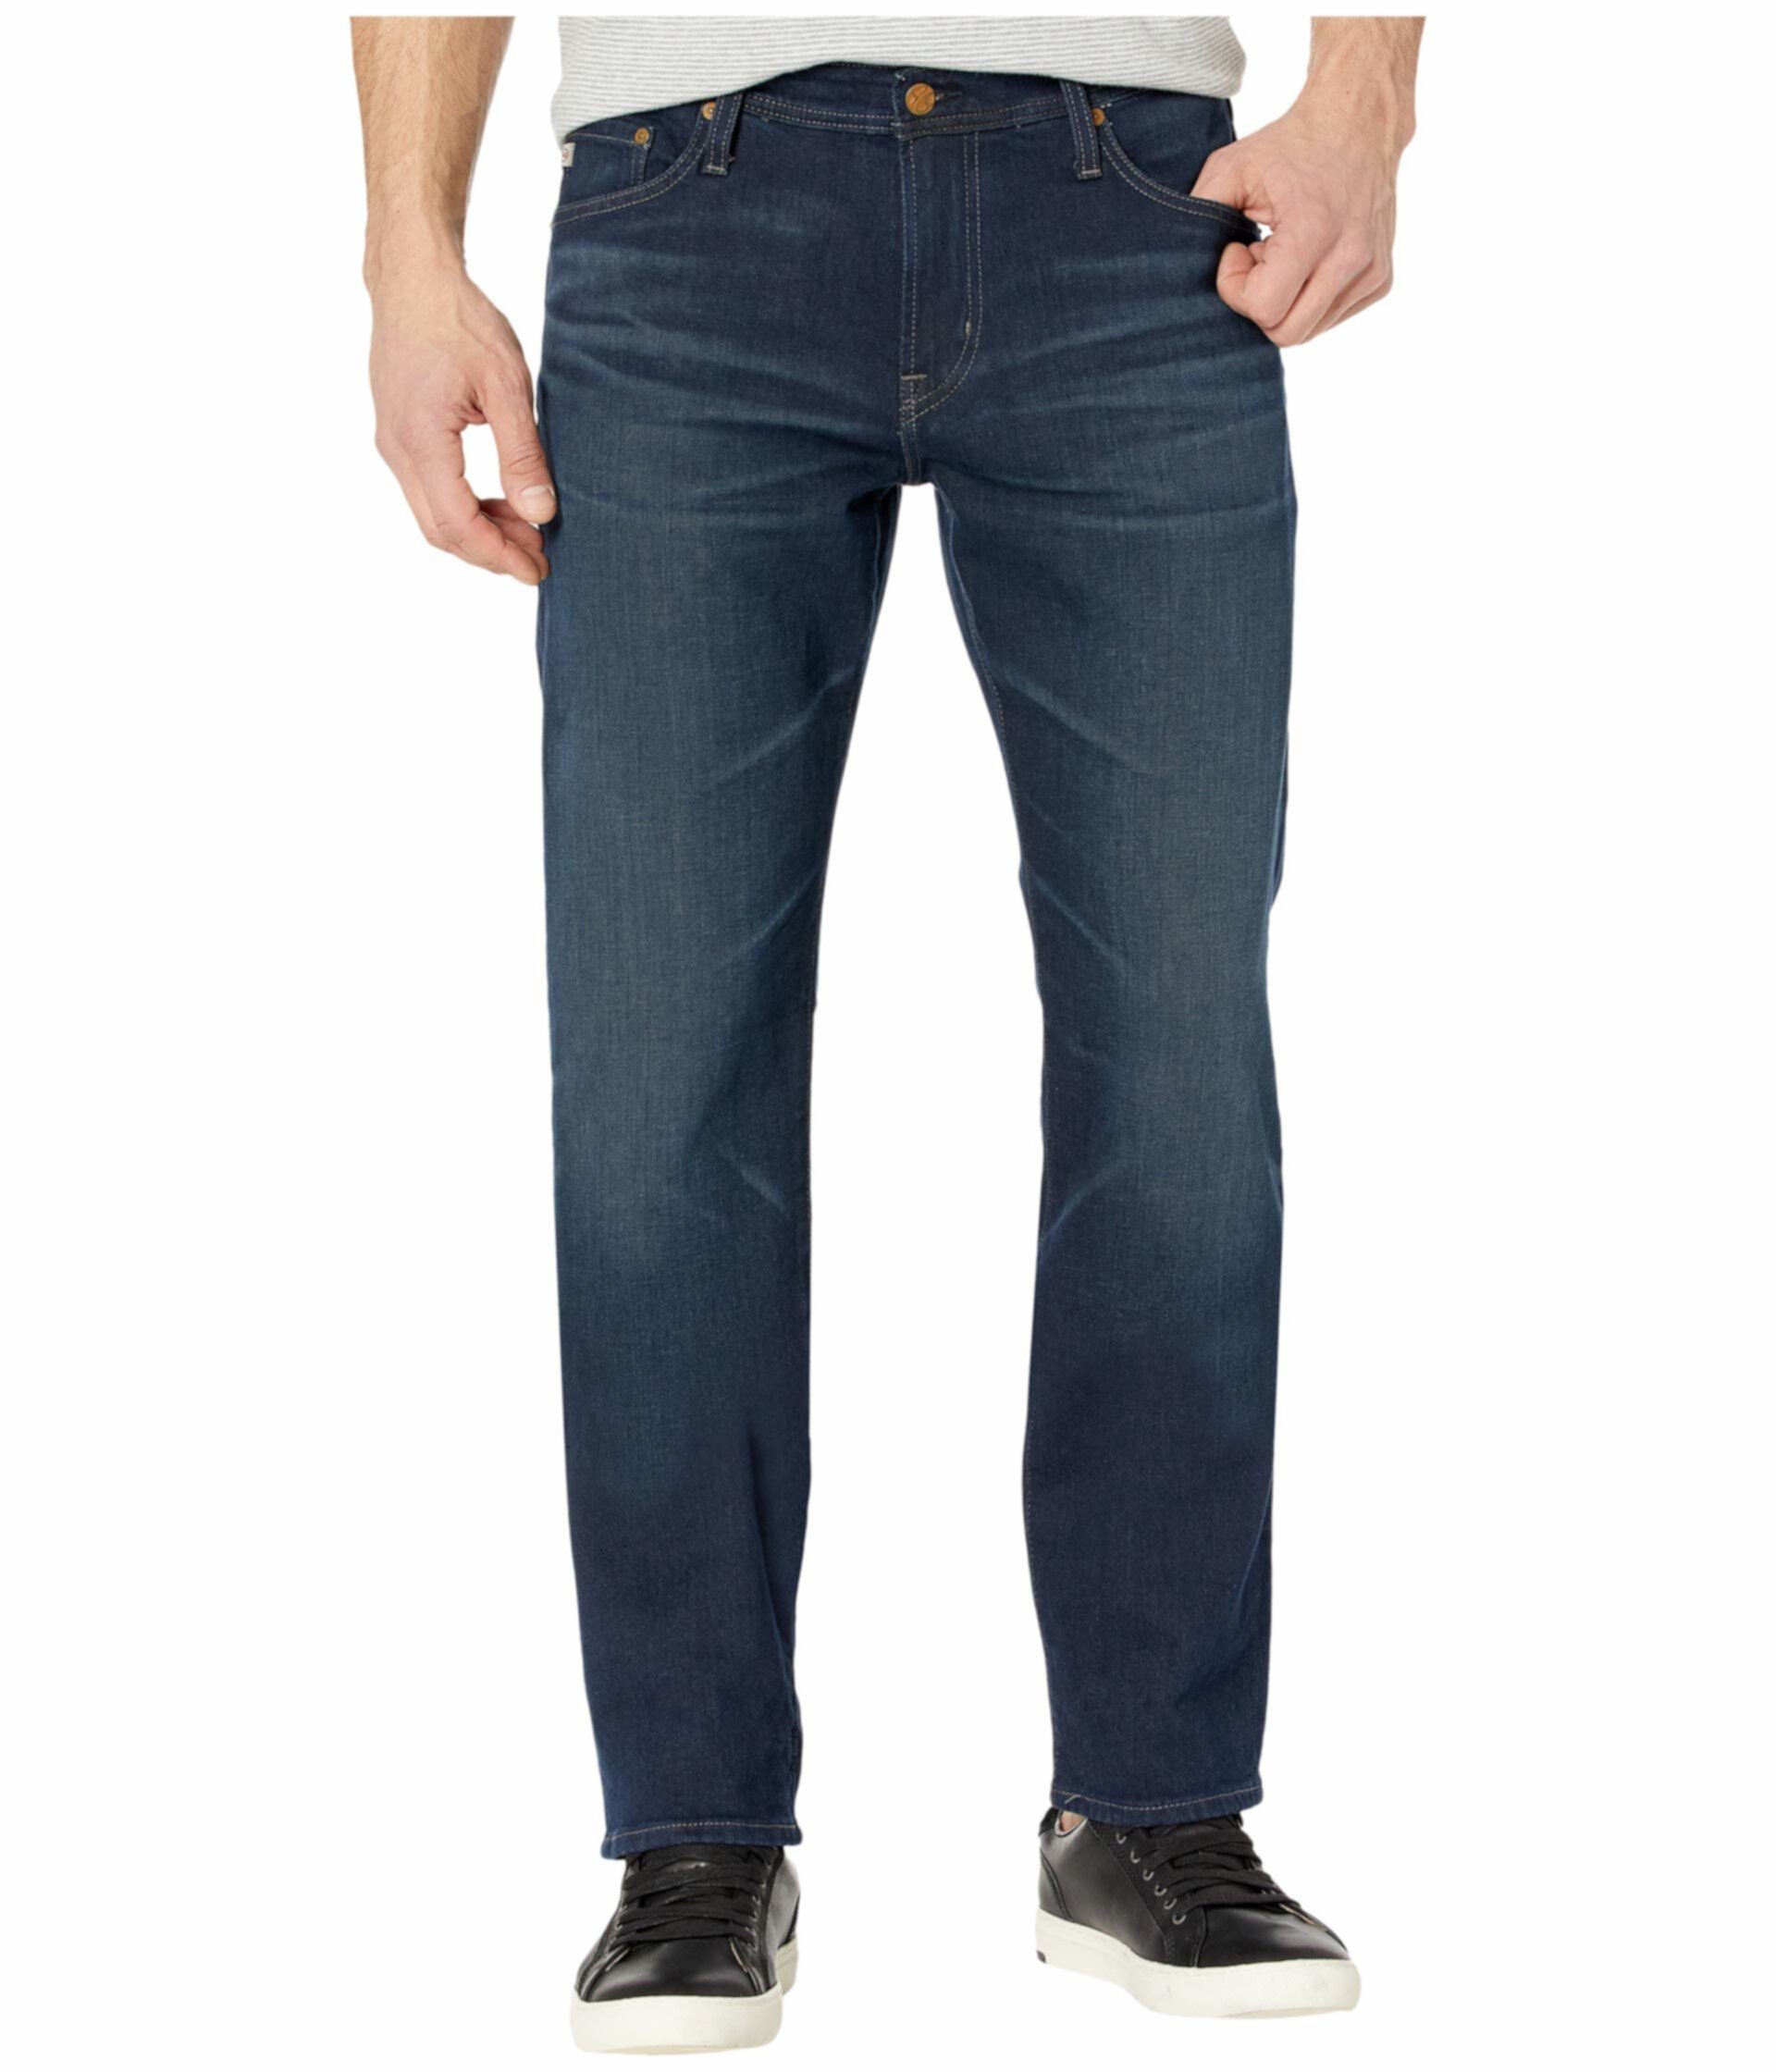 Выпускные джинсы на заказ в 4 года AG Adriano Goldschmied